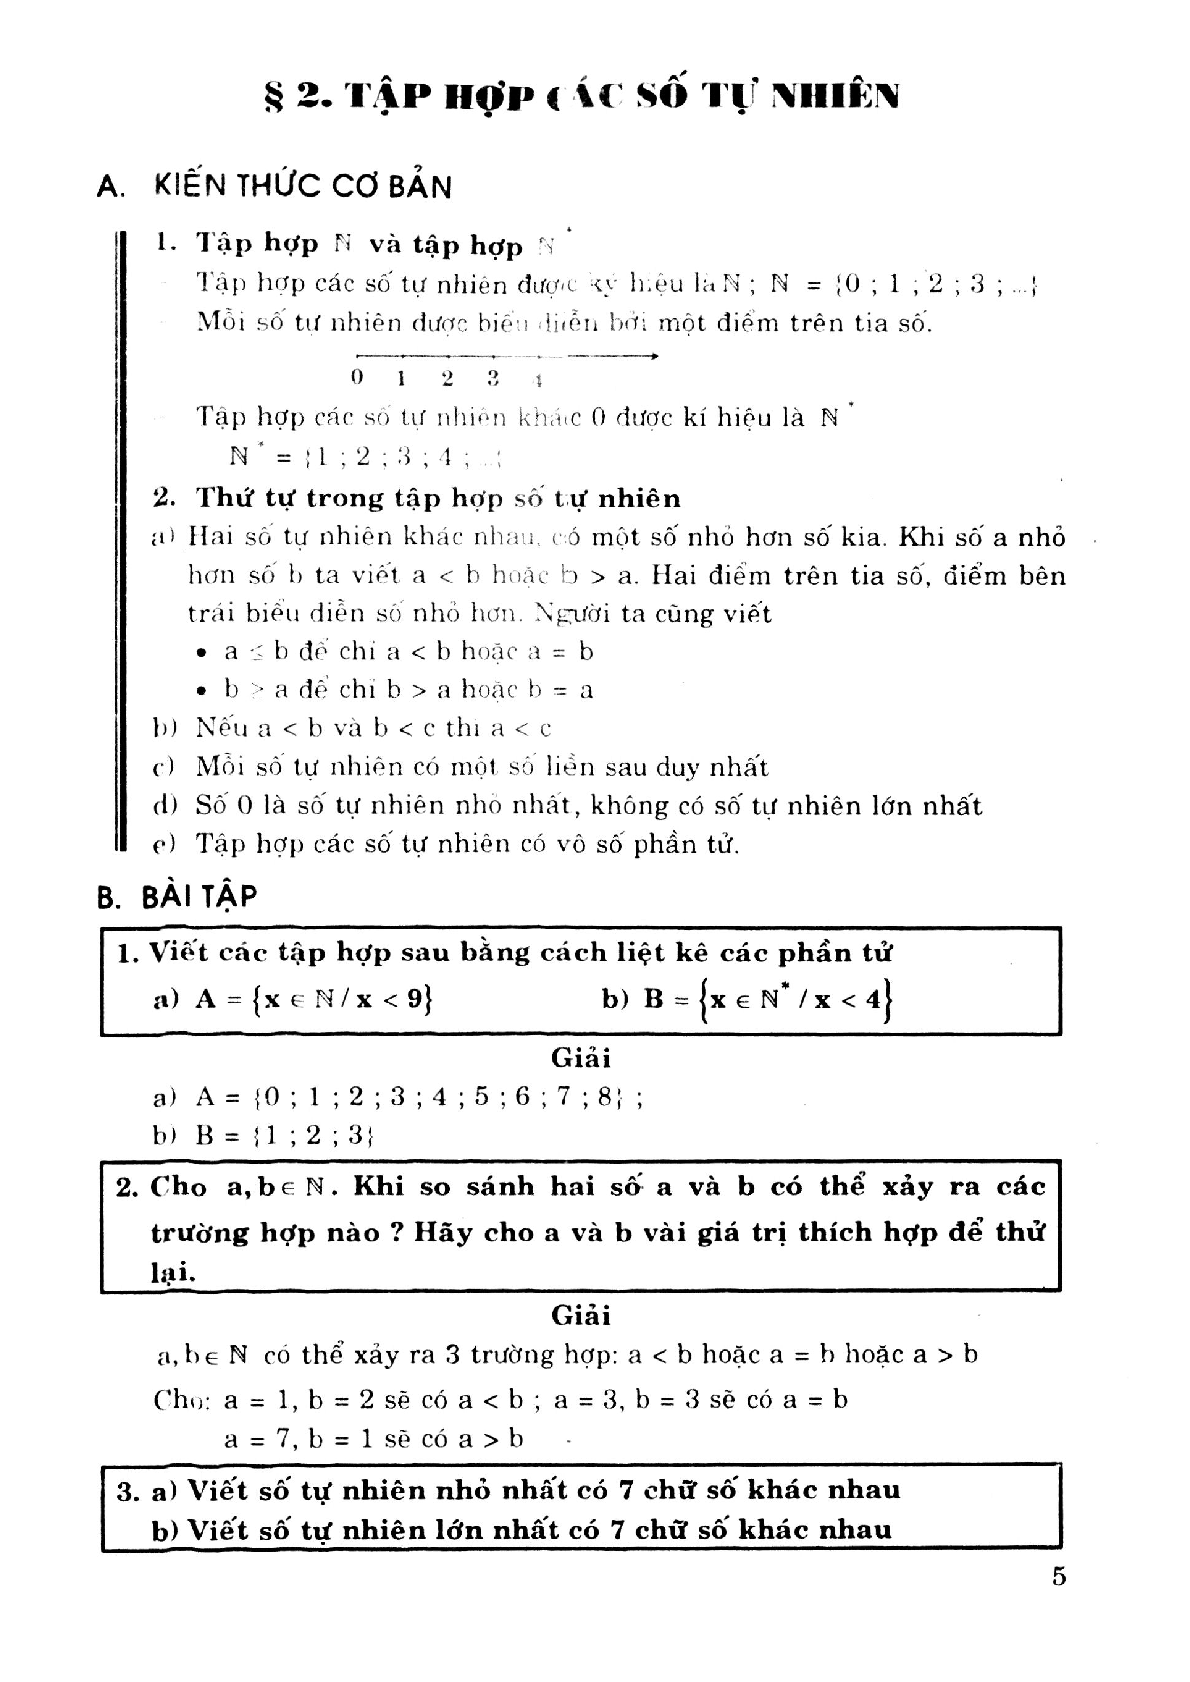 Phương pháp giải toán tự luận và trắc nghiệm nâng cao 6 (trang 3)